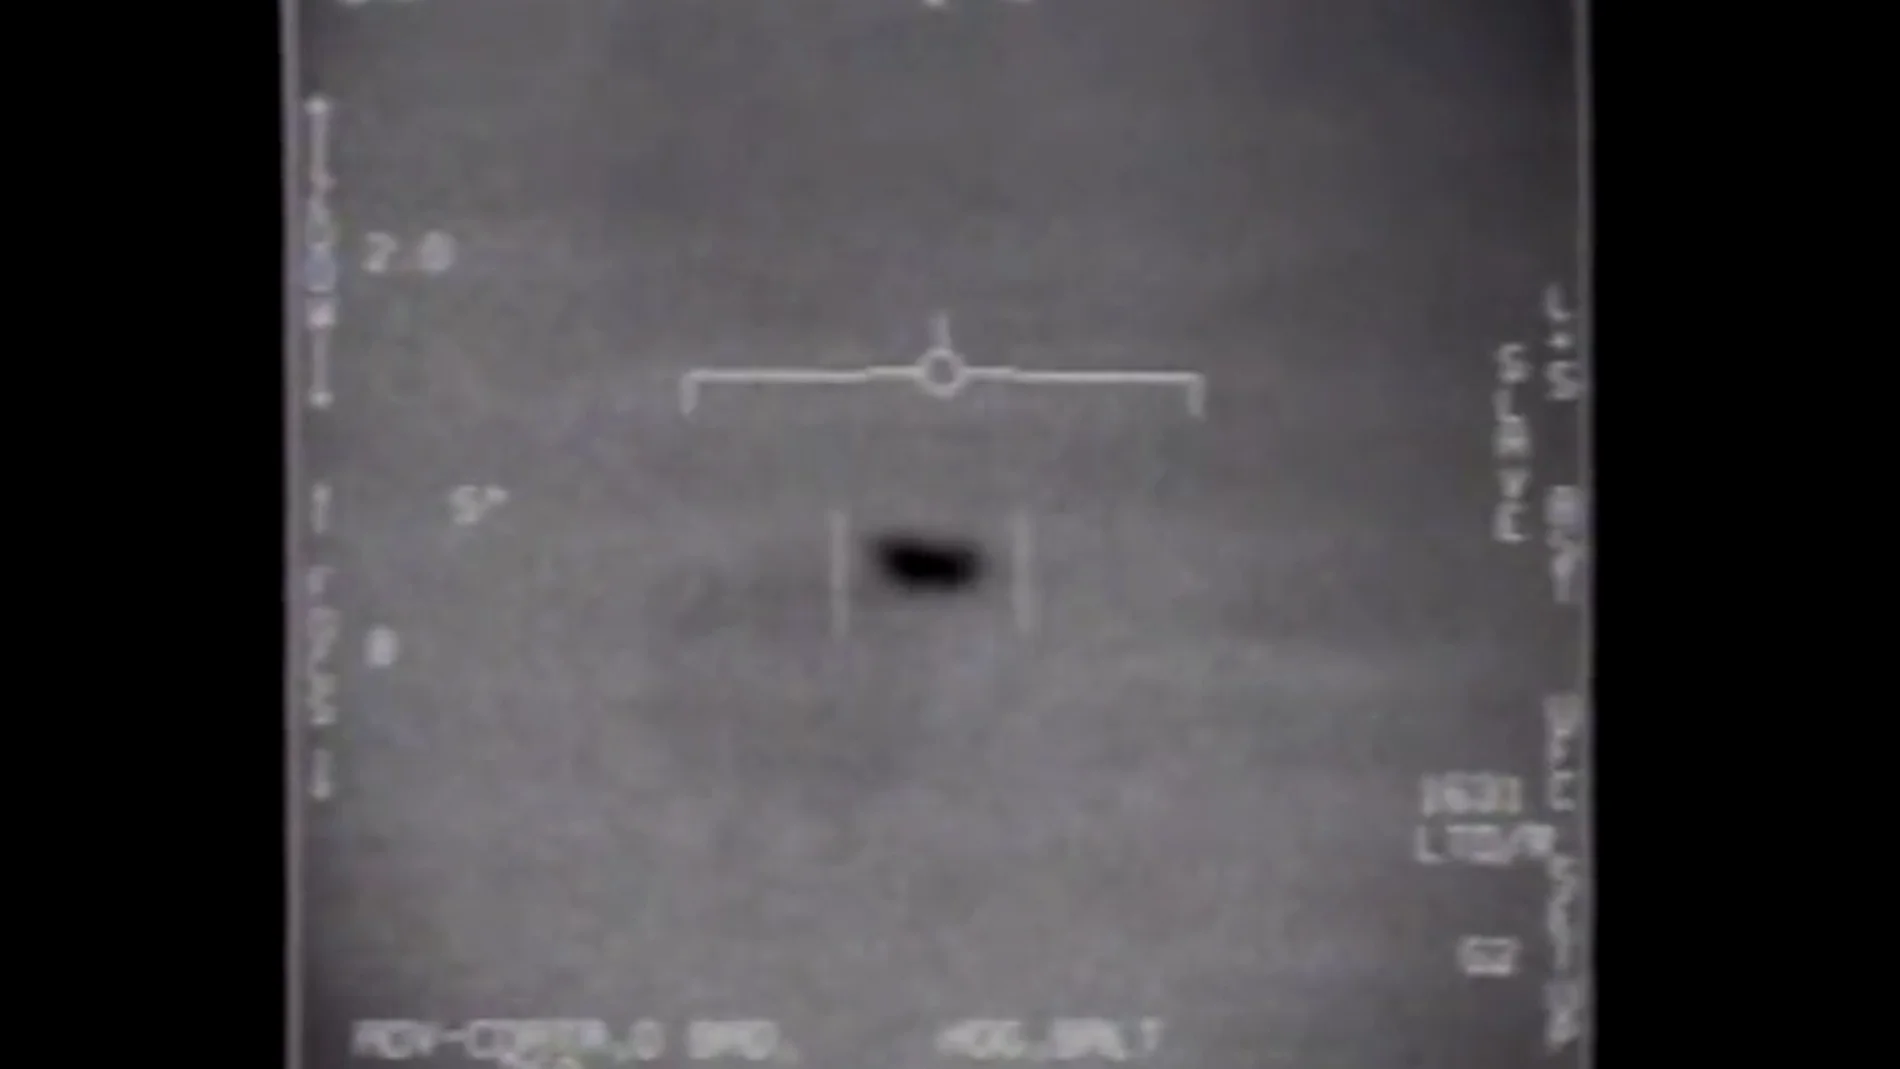 Los vídeos oficiales del Pentágono que muestran "fenómenos voladores no identificados"